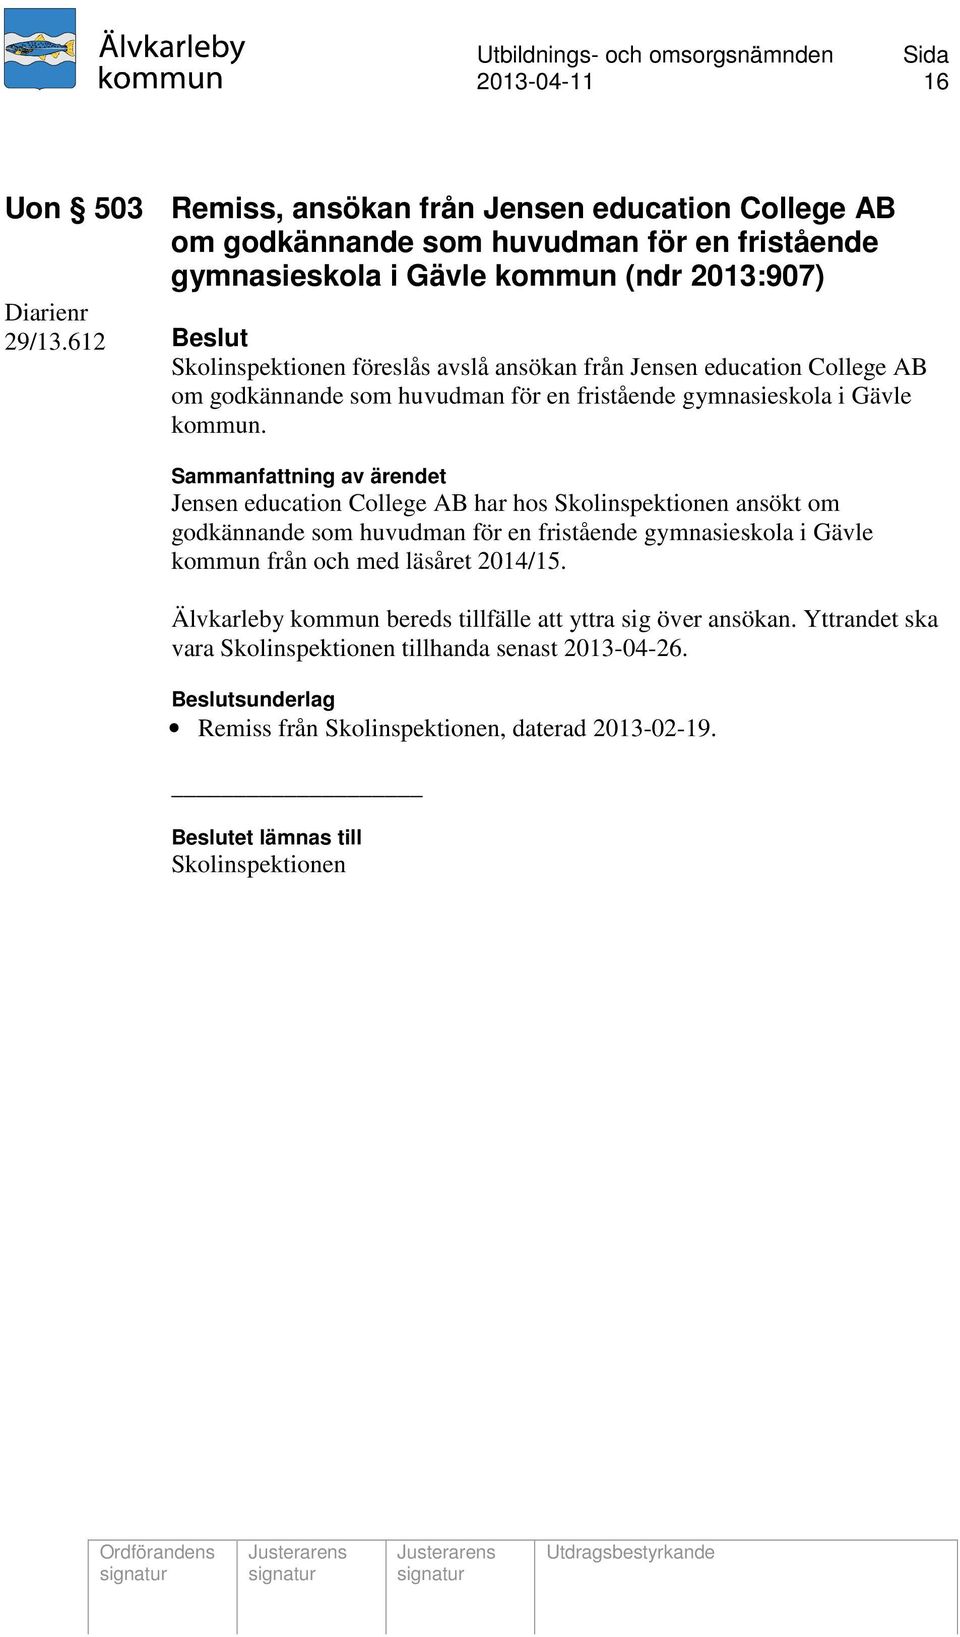 Jensen education College AB har hos Skolinspektionen ansökt om godkännande som huvudman för en fristående gymnasieskola i Gävle kommun från och med läsåret 2014/15.